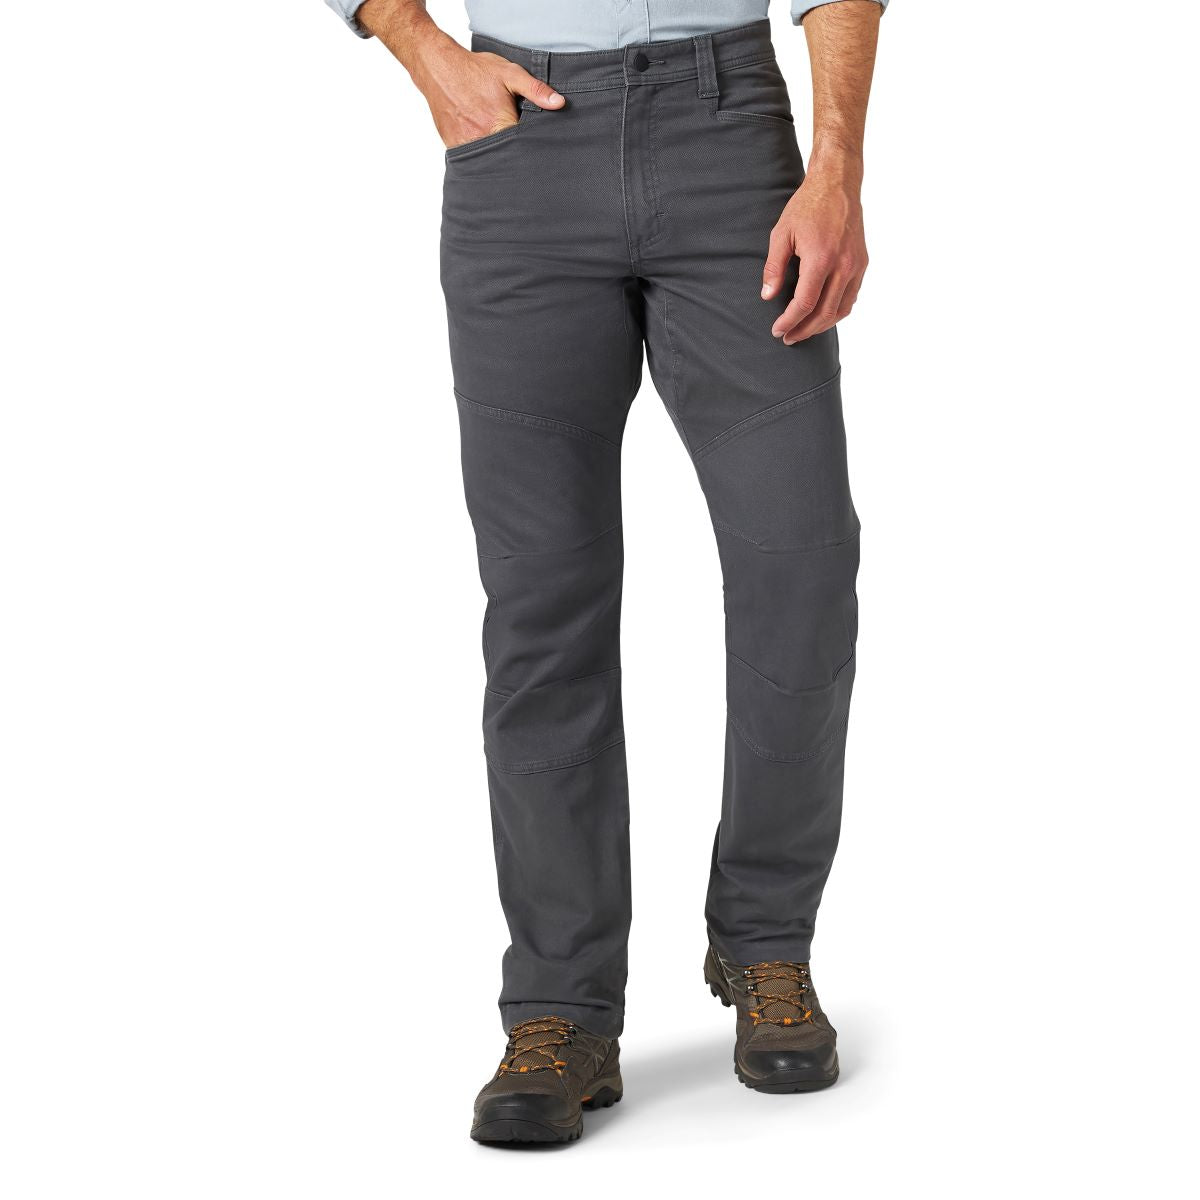 Wrangler' Men's Reinforced Utility Pant - Grey – Trav's Outfitter